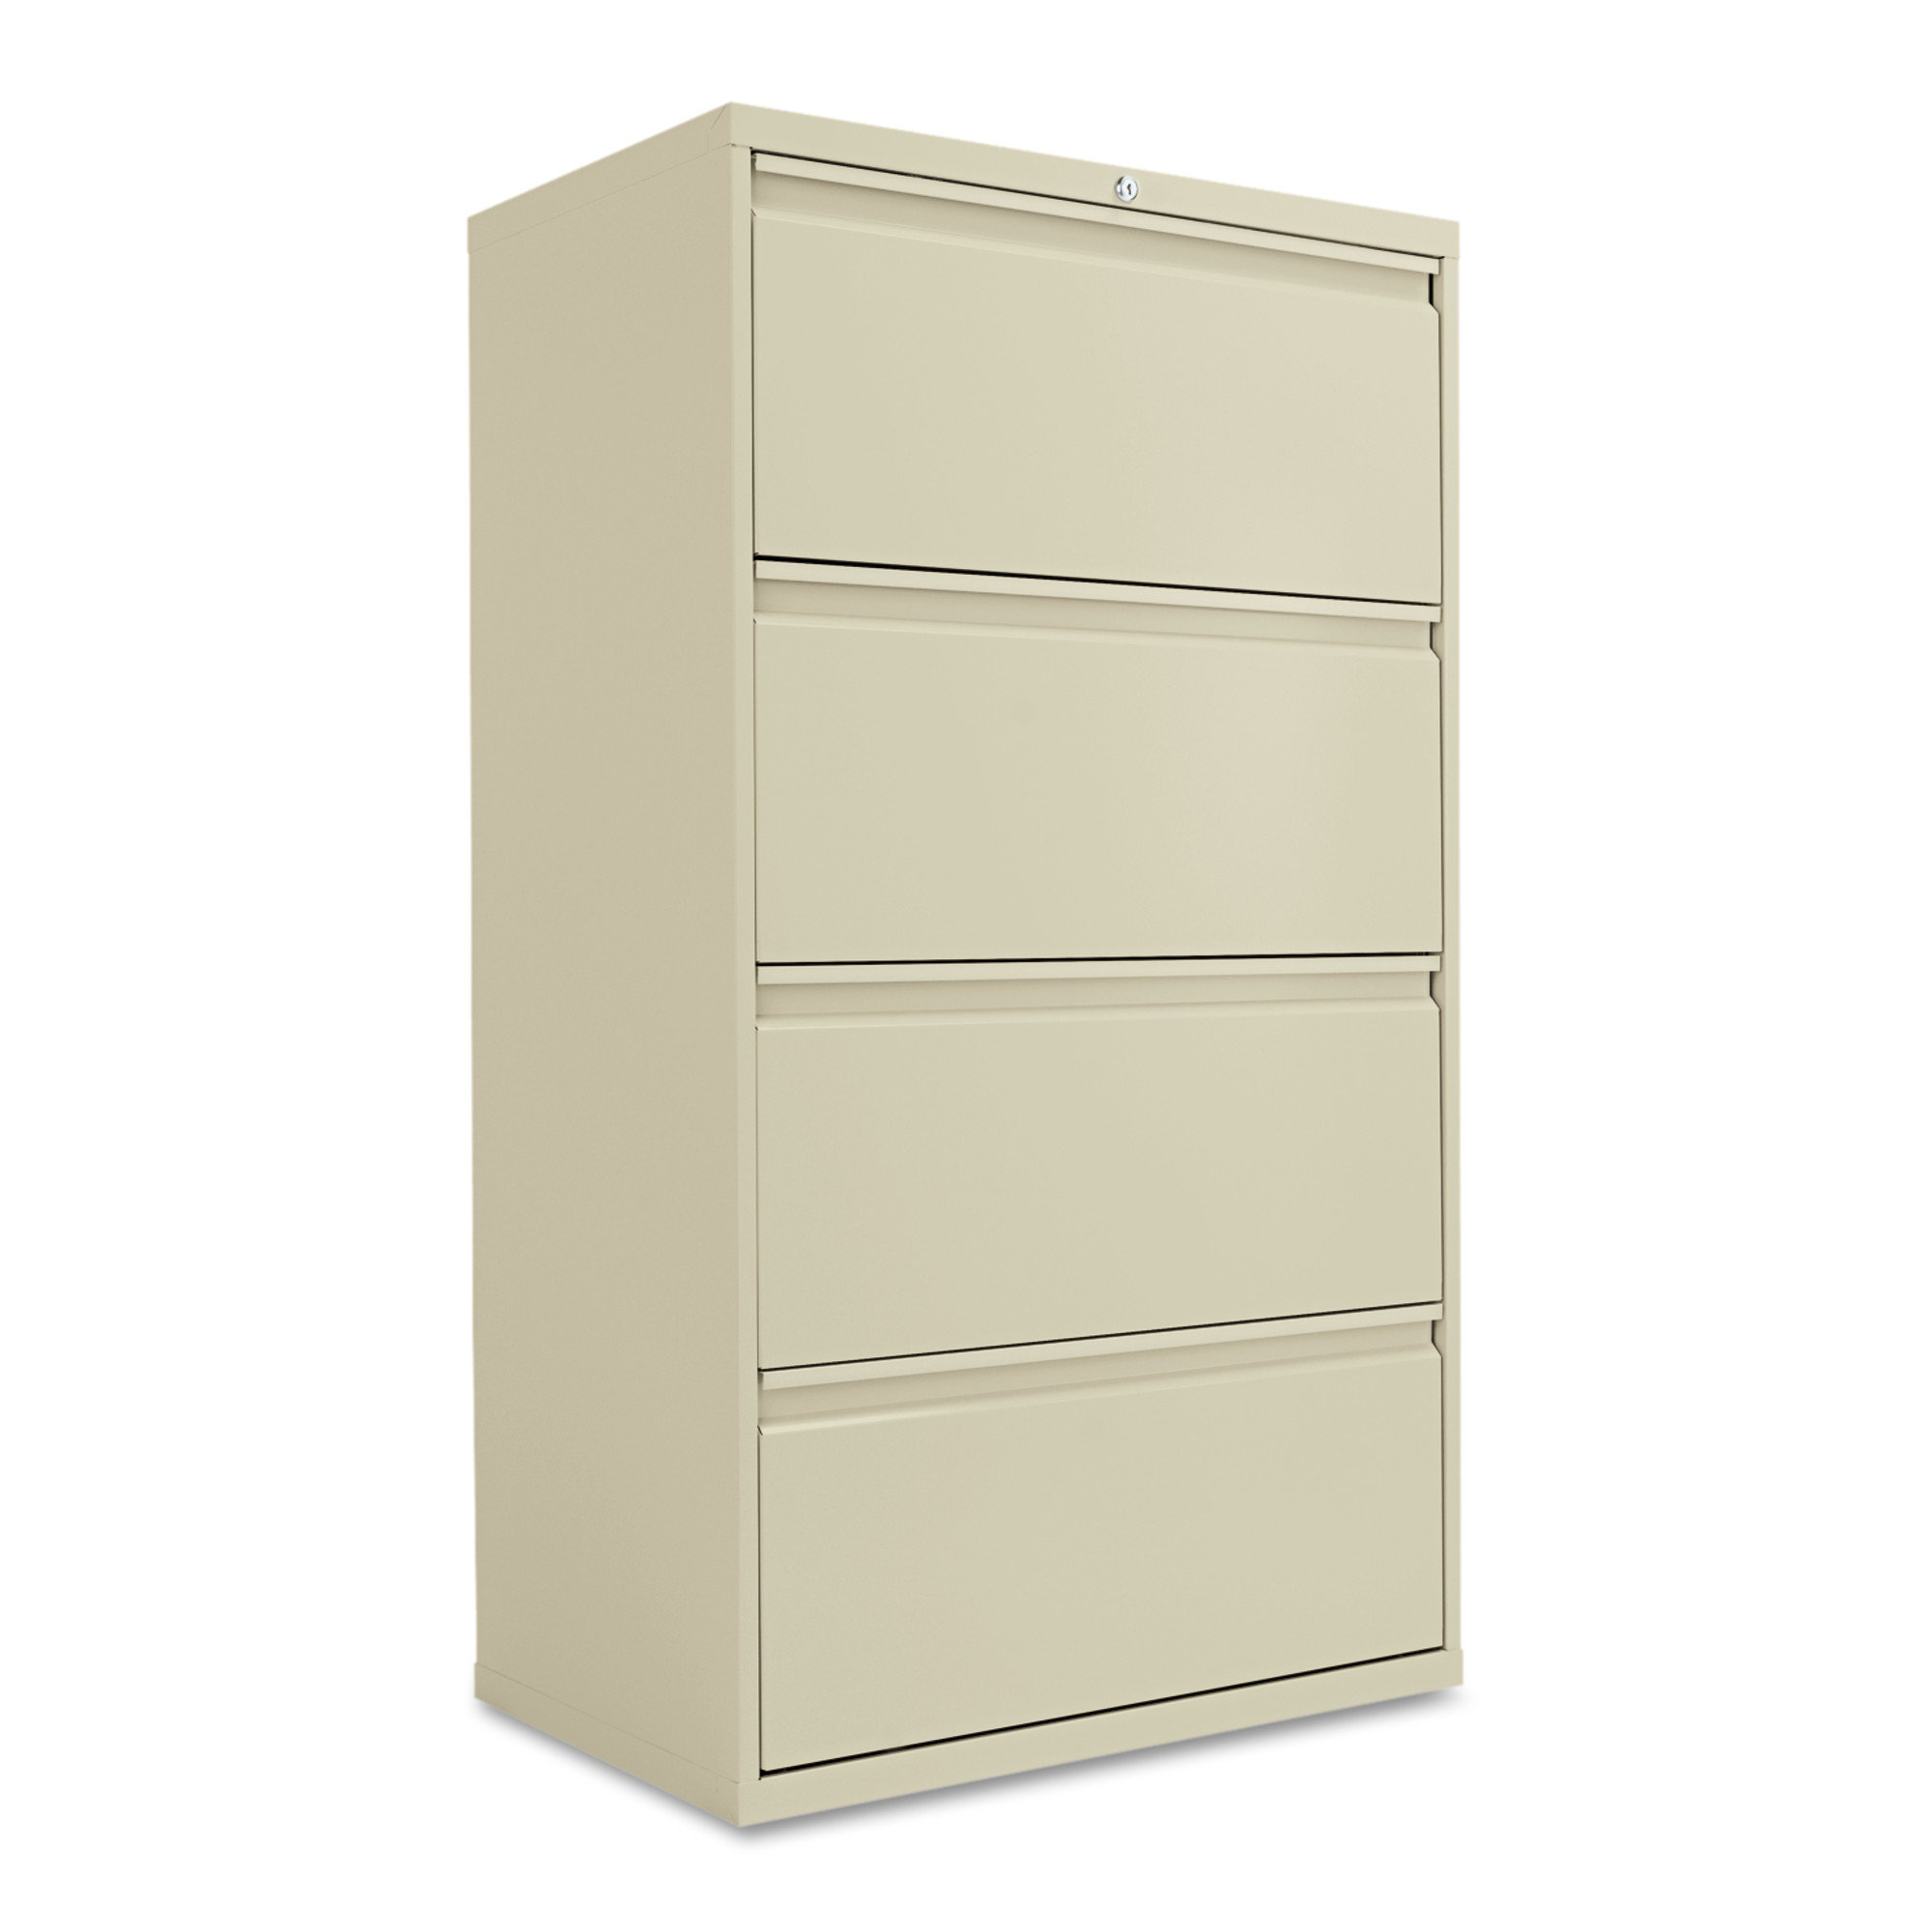 Alera 4 Drawer File Cabinet Reviews Wayfair regarding size 2000 X 2000